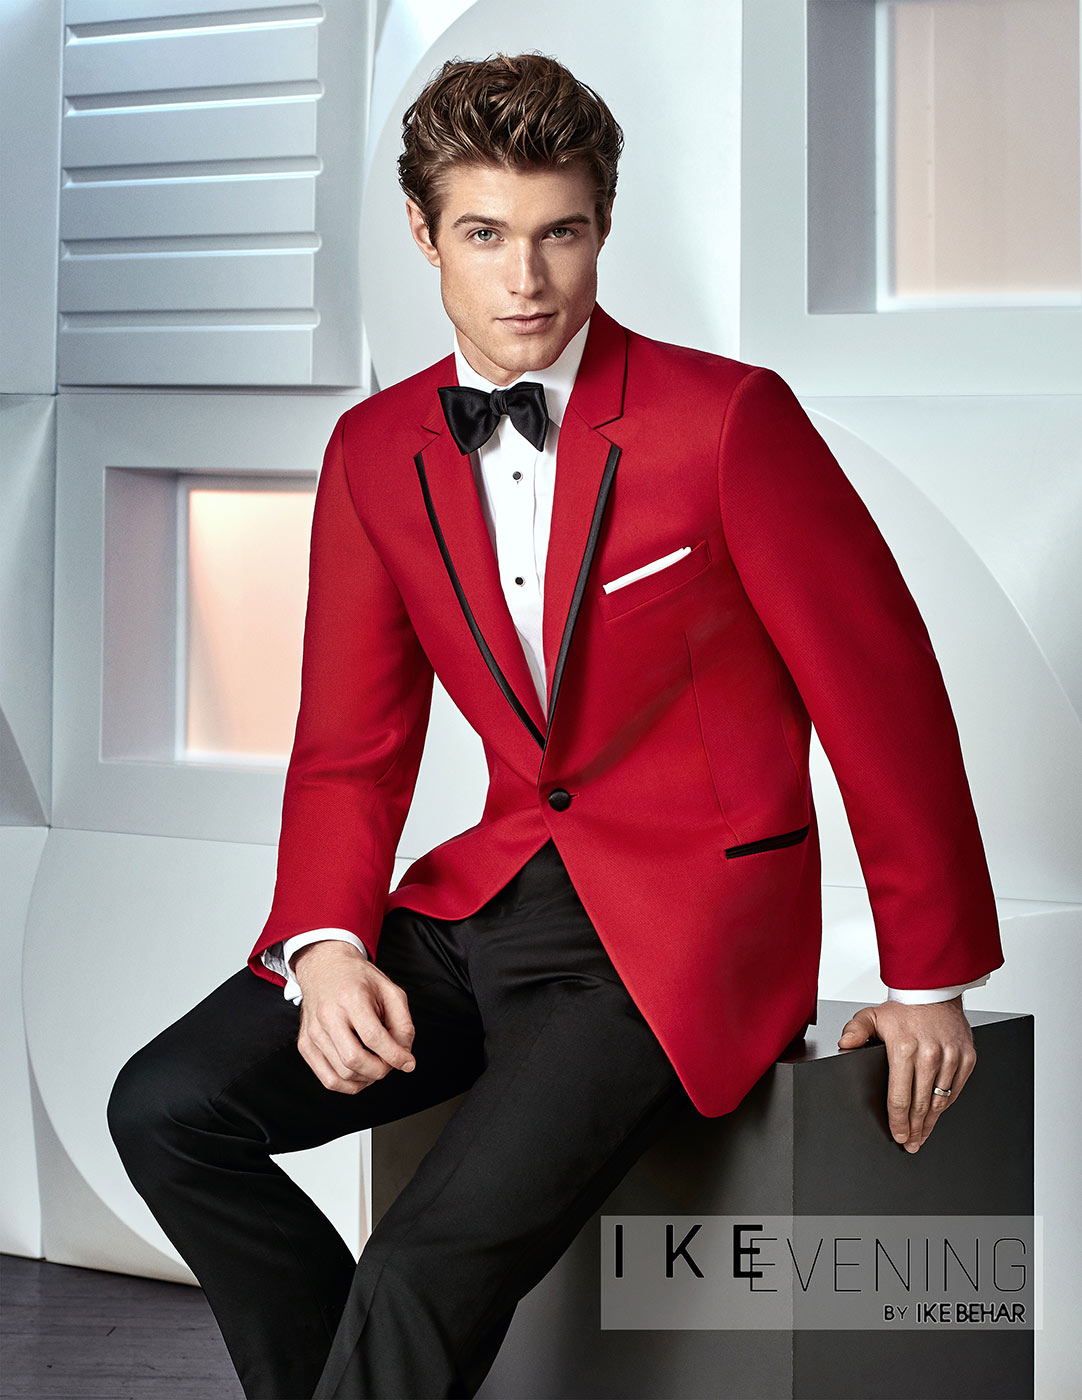 'Stingray' Red Tuxedo Jacket